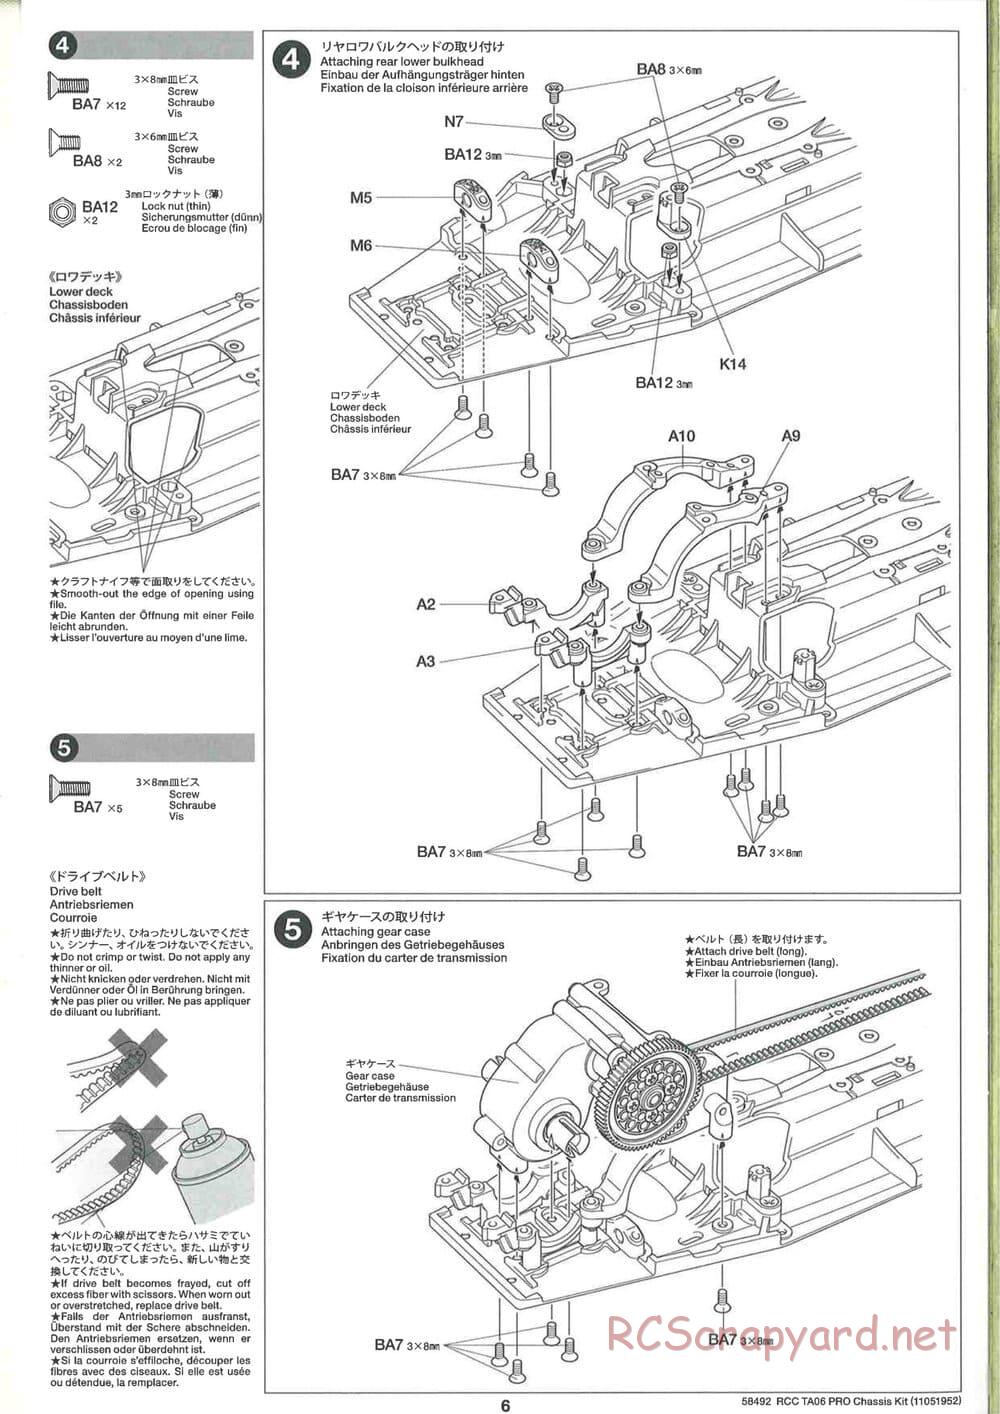 Tamiya - TA06 Pro Chassis - Manual - Page 6